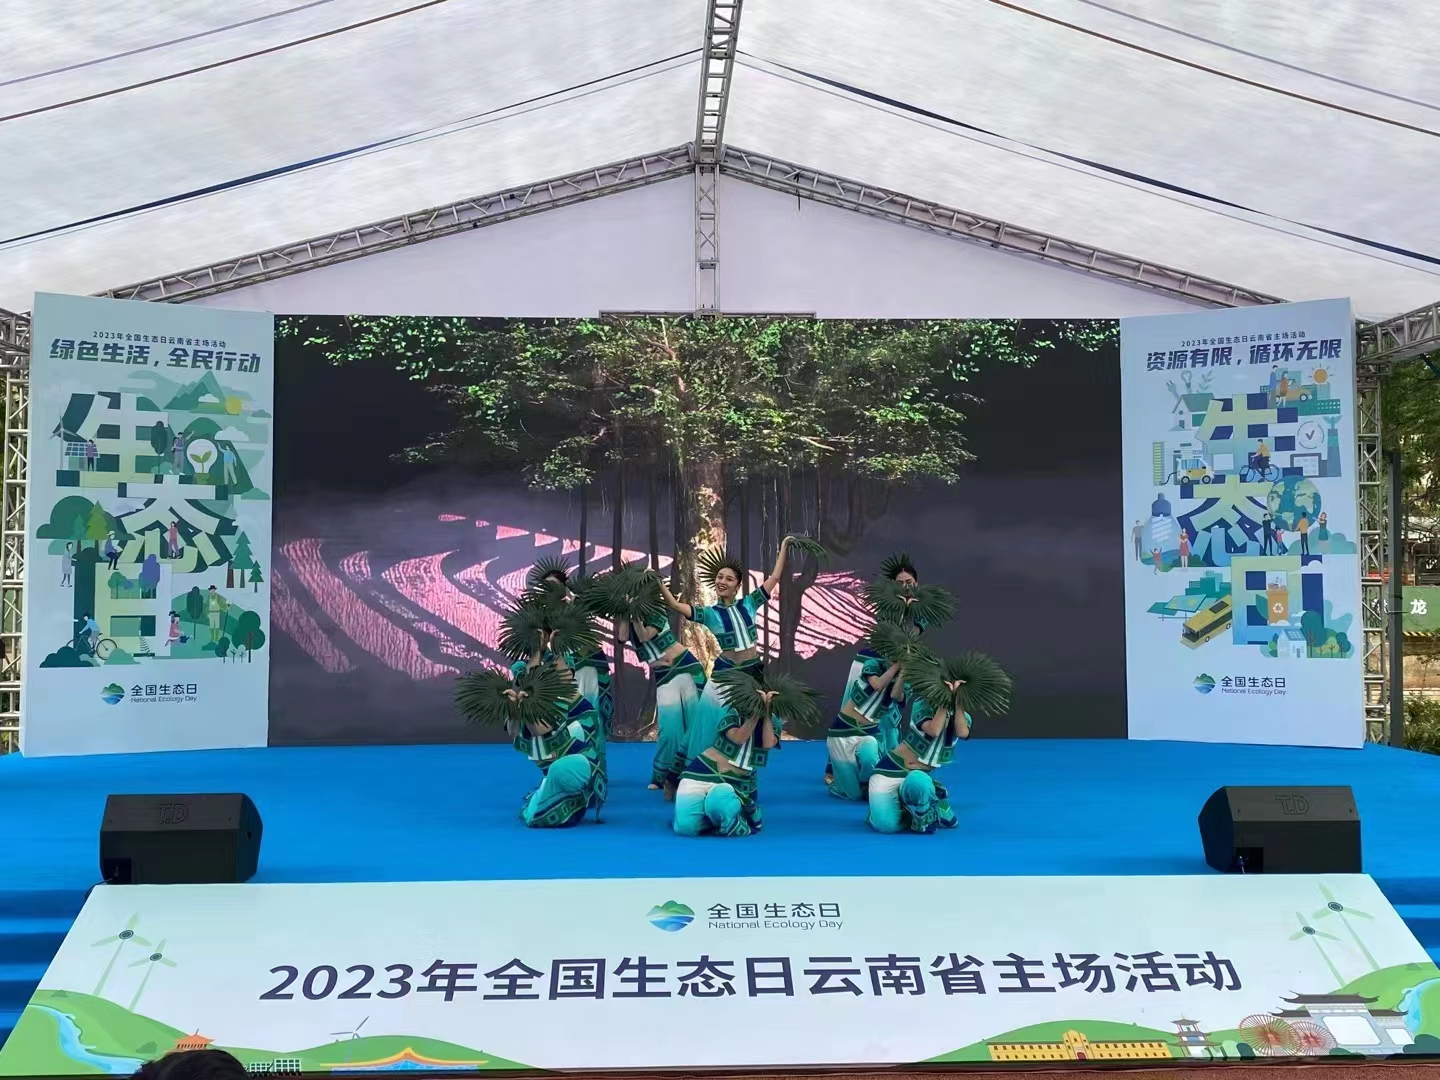 2023年首個全國生態日雲南省主場活動在昆明舉行